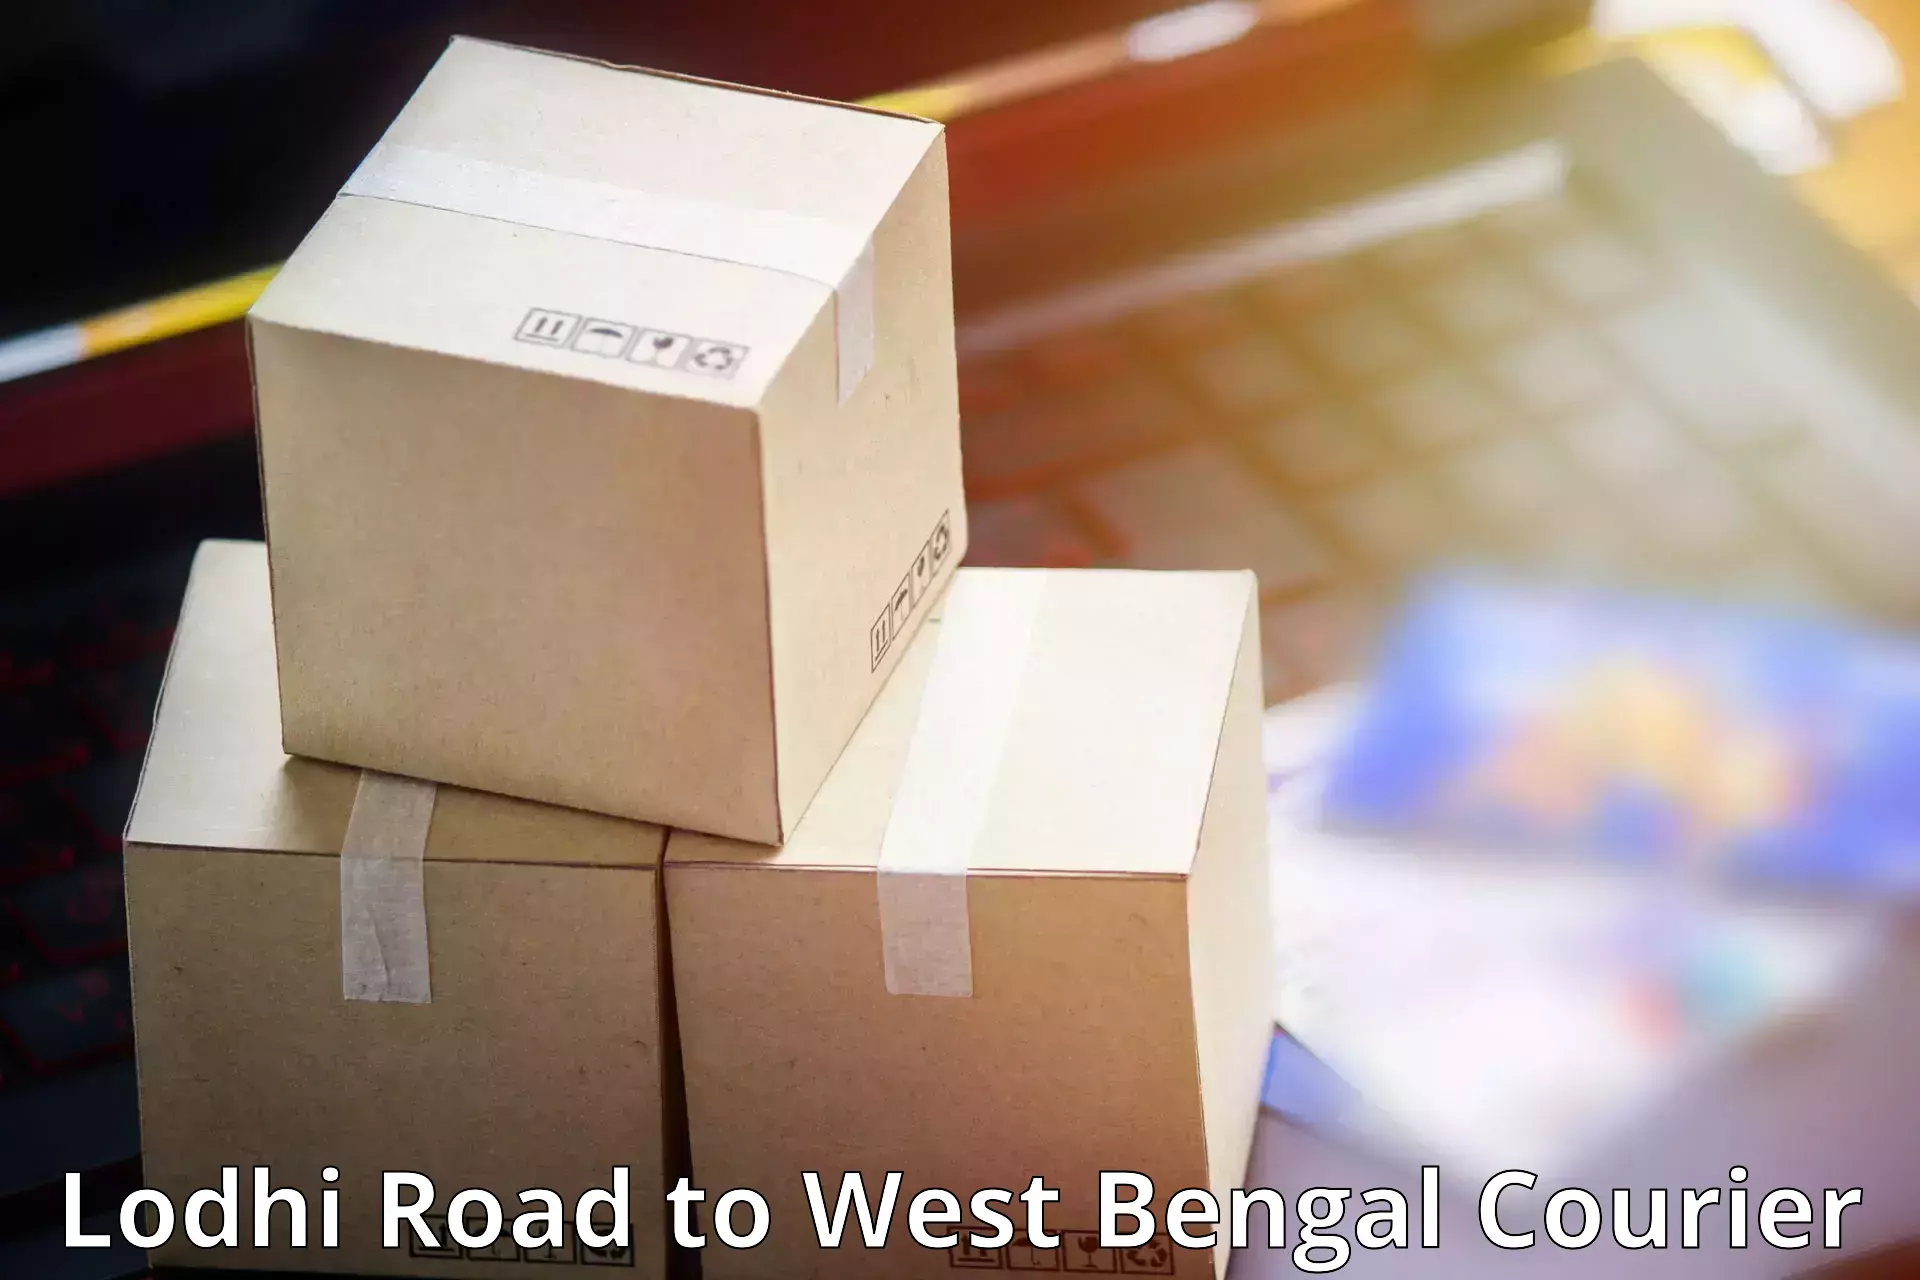 Efficient parcel service Lodhi Road to Jalpaiguri